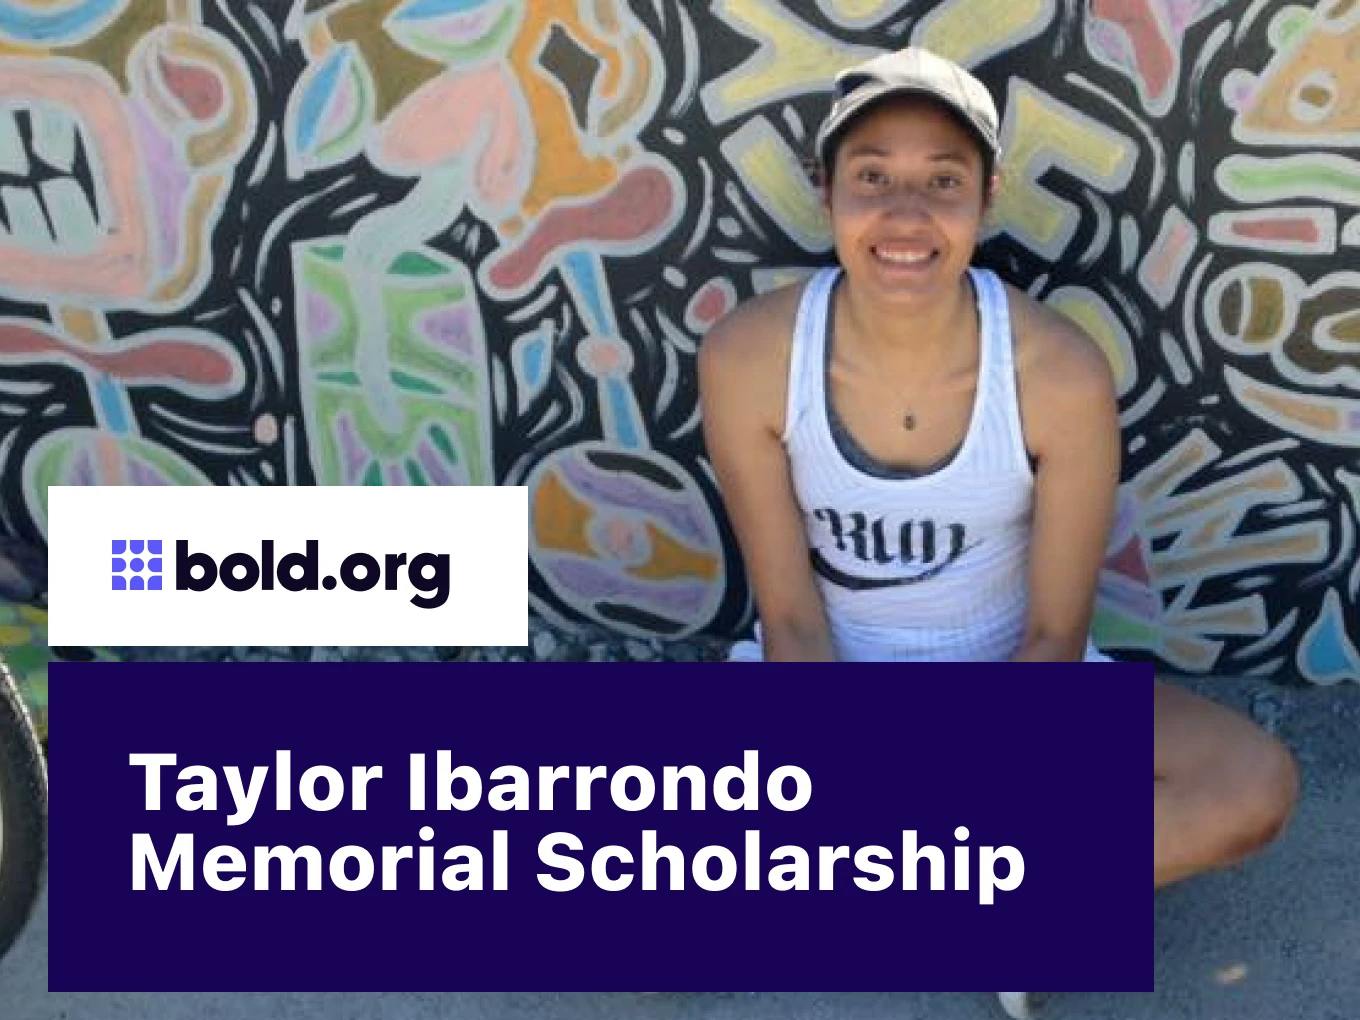 Taylor Ibarrondo Memorial Scholarship